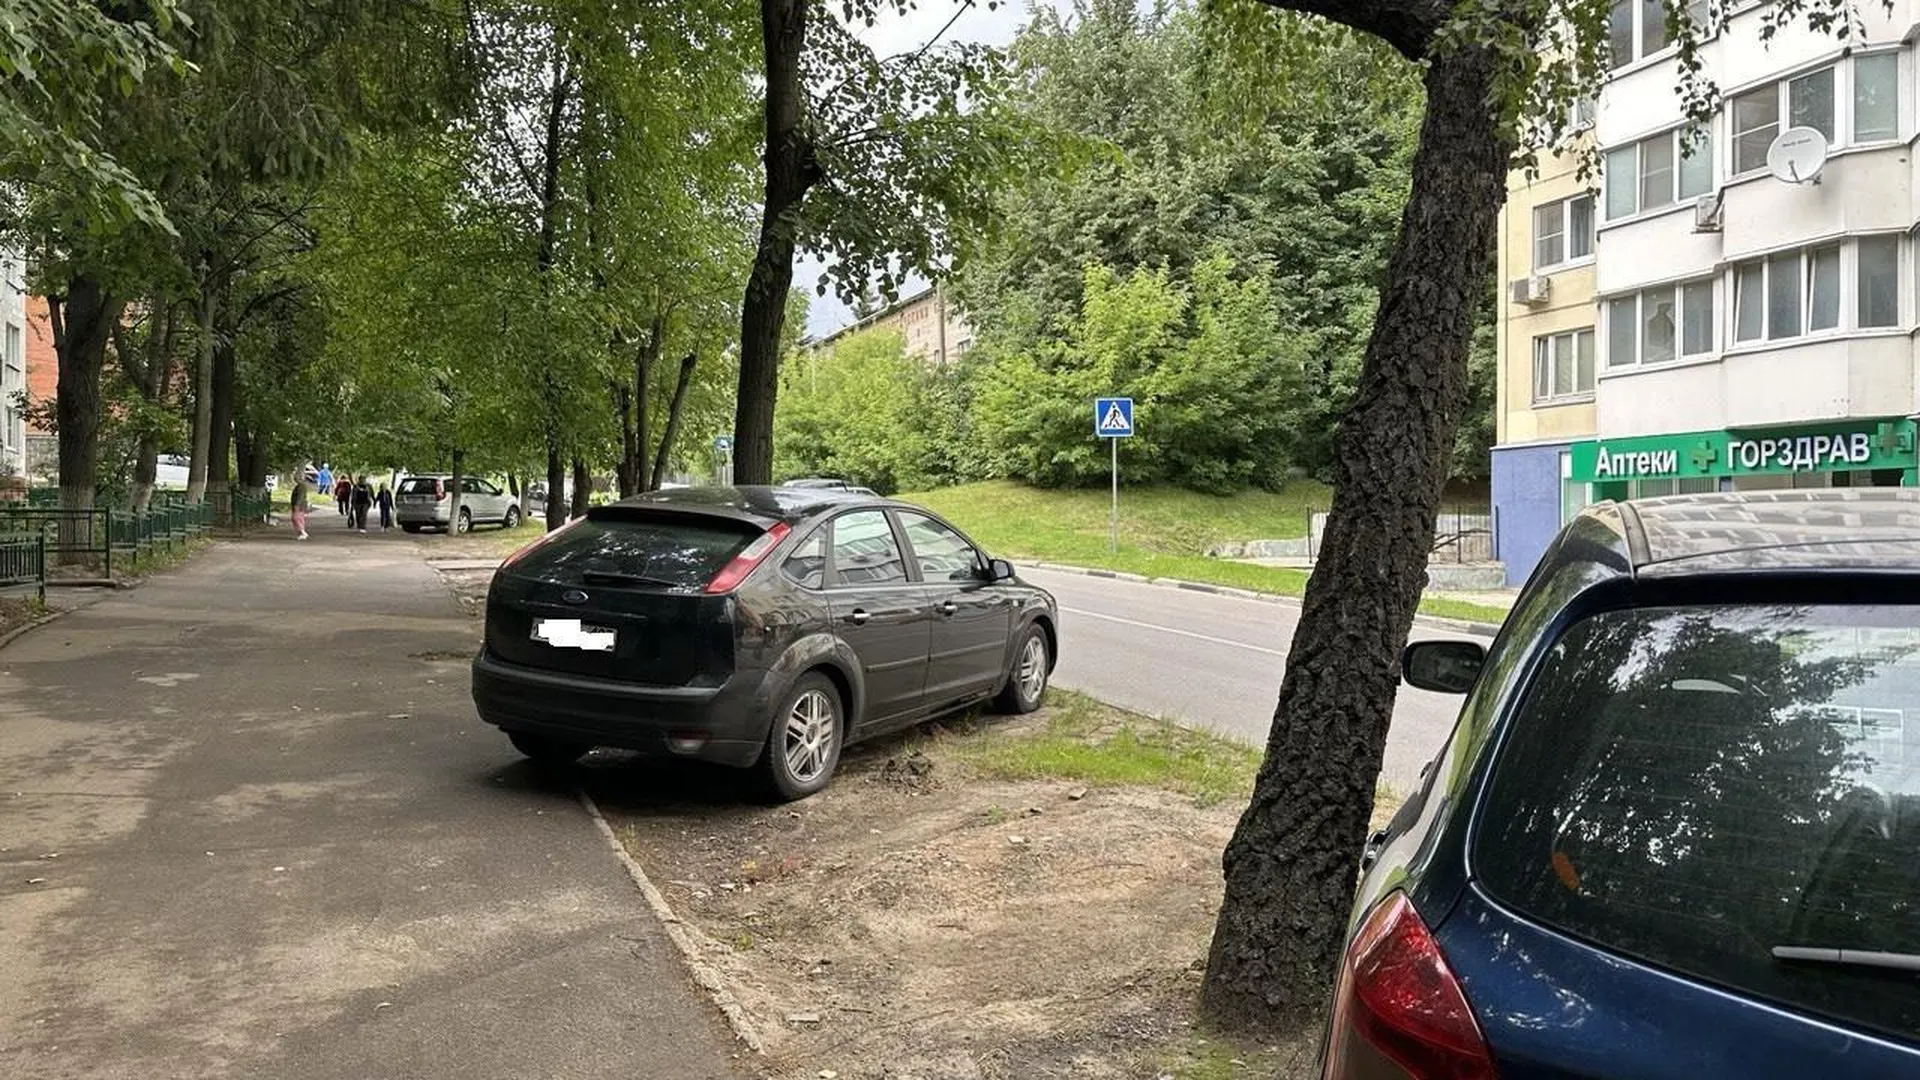 Жители Подмосковья сообщили о 137 случаях парковки на газонах